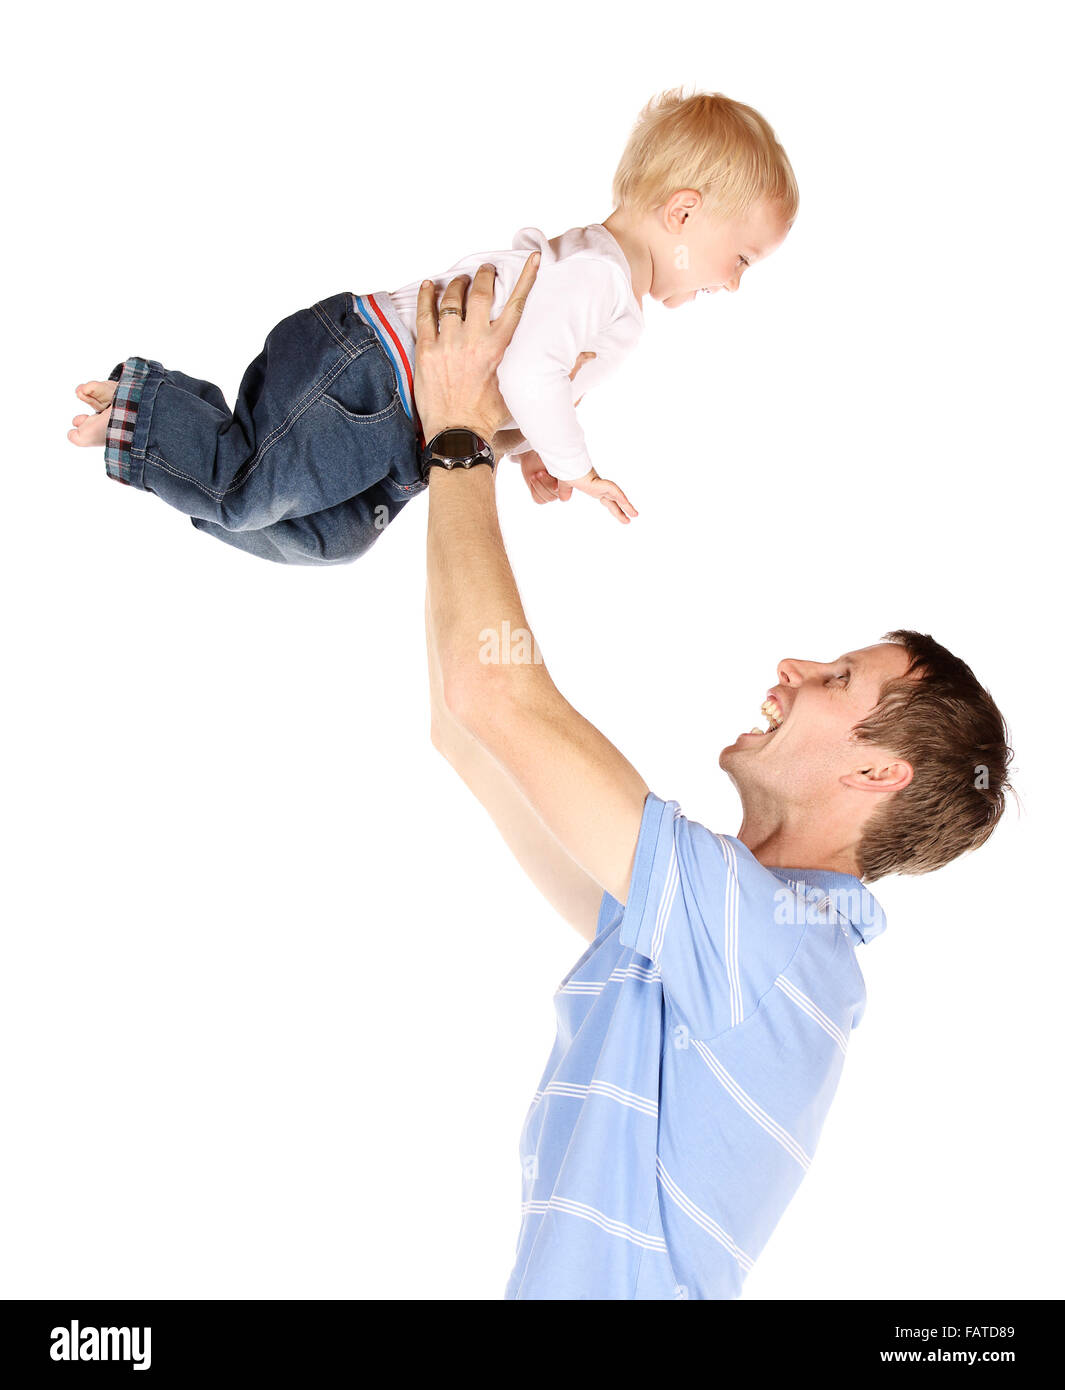 Heureux papa de race blanche tenant son bébé garçon. L'image est isolé sur un fond blanc. Banque D'Images